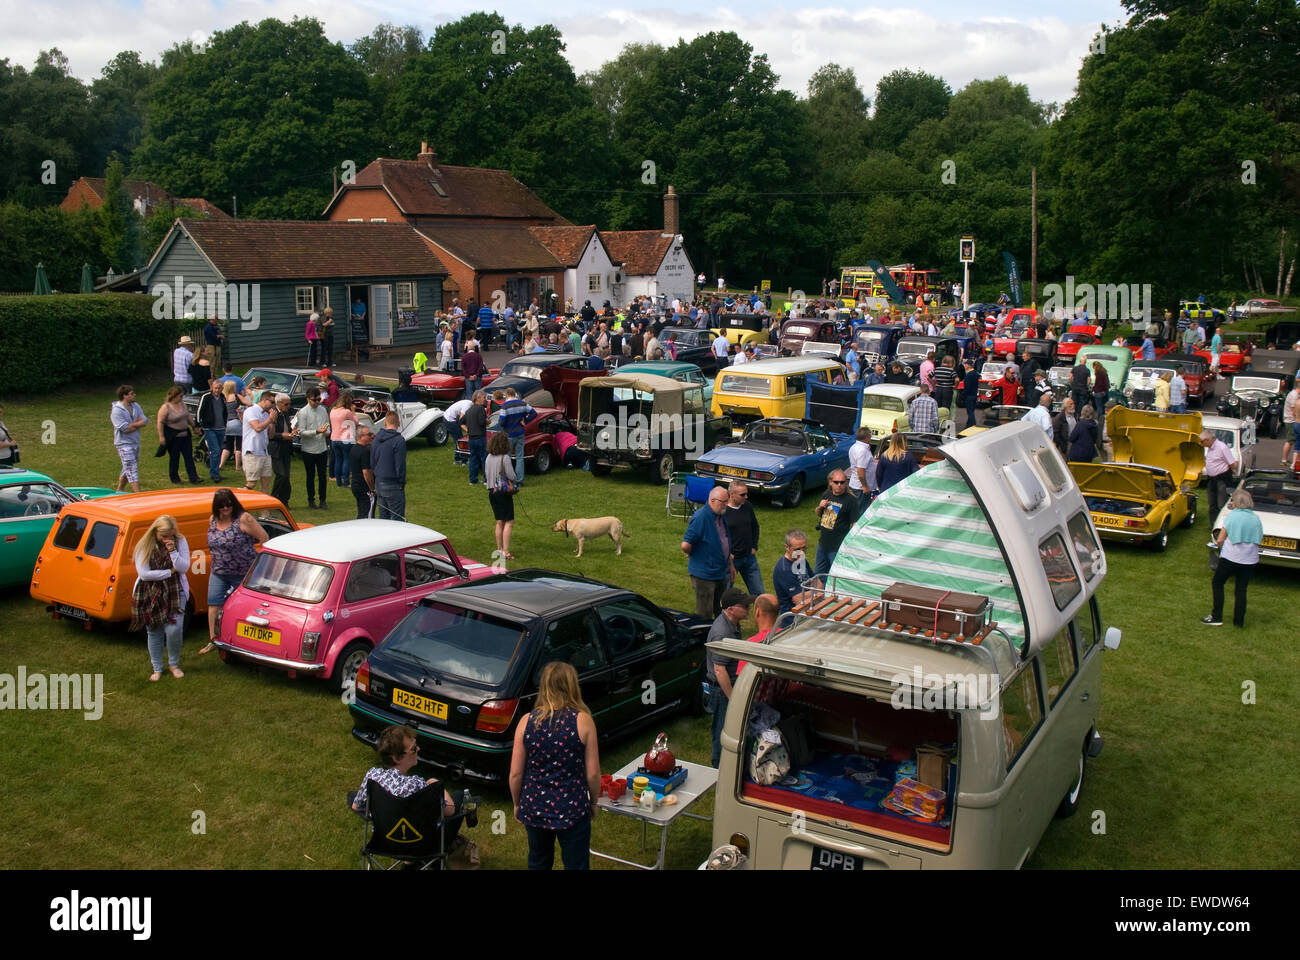 La foule rassemblée dans un salon de voitures, Hindhead, Hampshire, Royaume-Uni. Banque D'Images